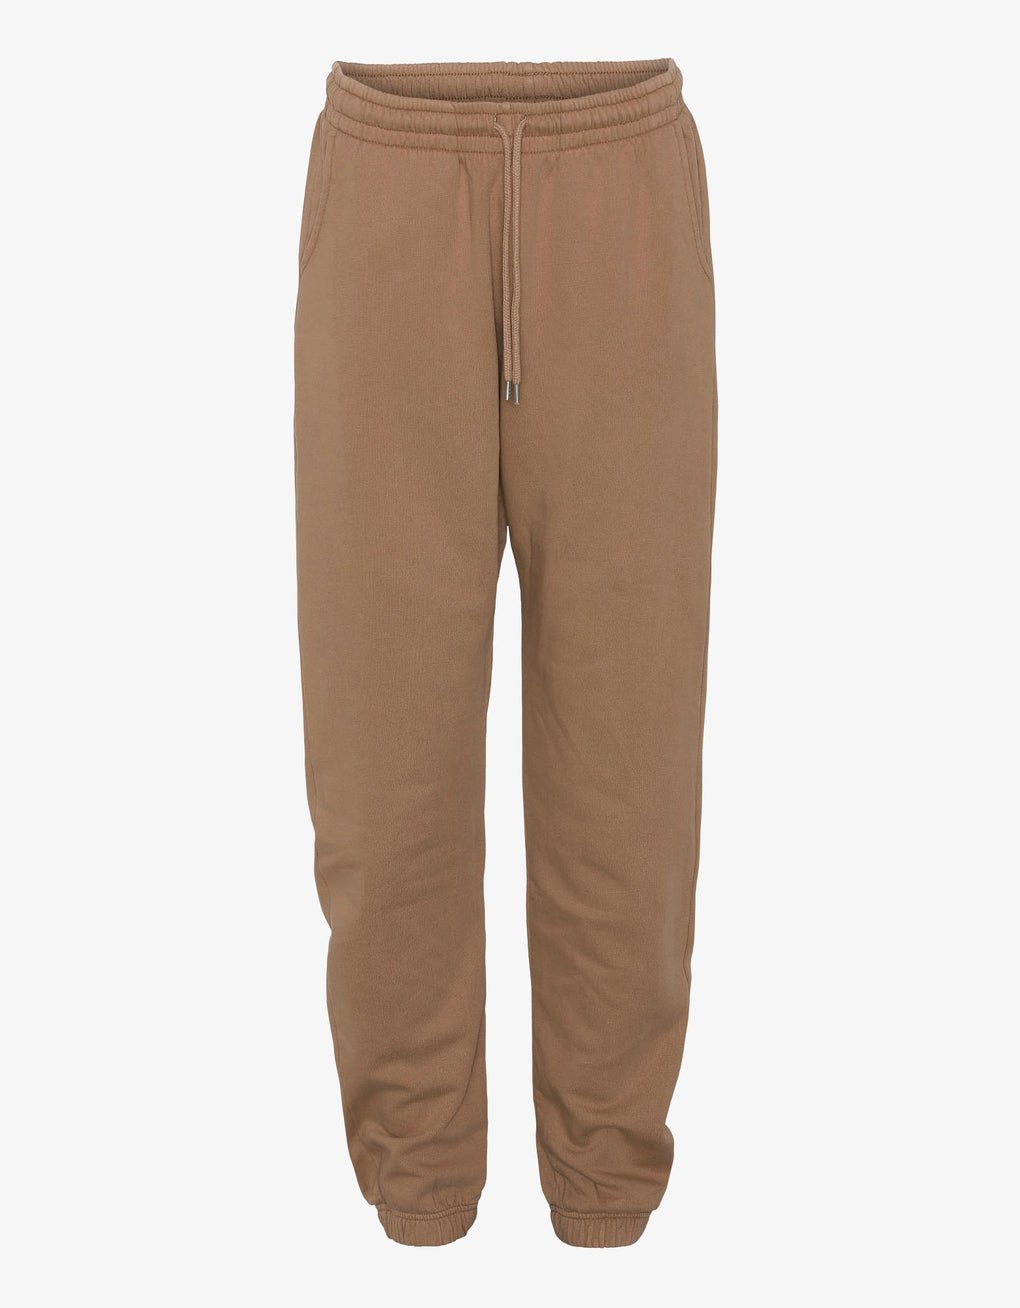 Organic Sweatpants - Colorful Standard - Danali - CS1011-Sahara-S